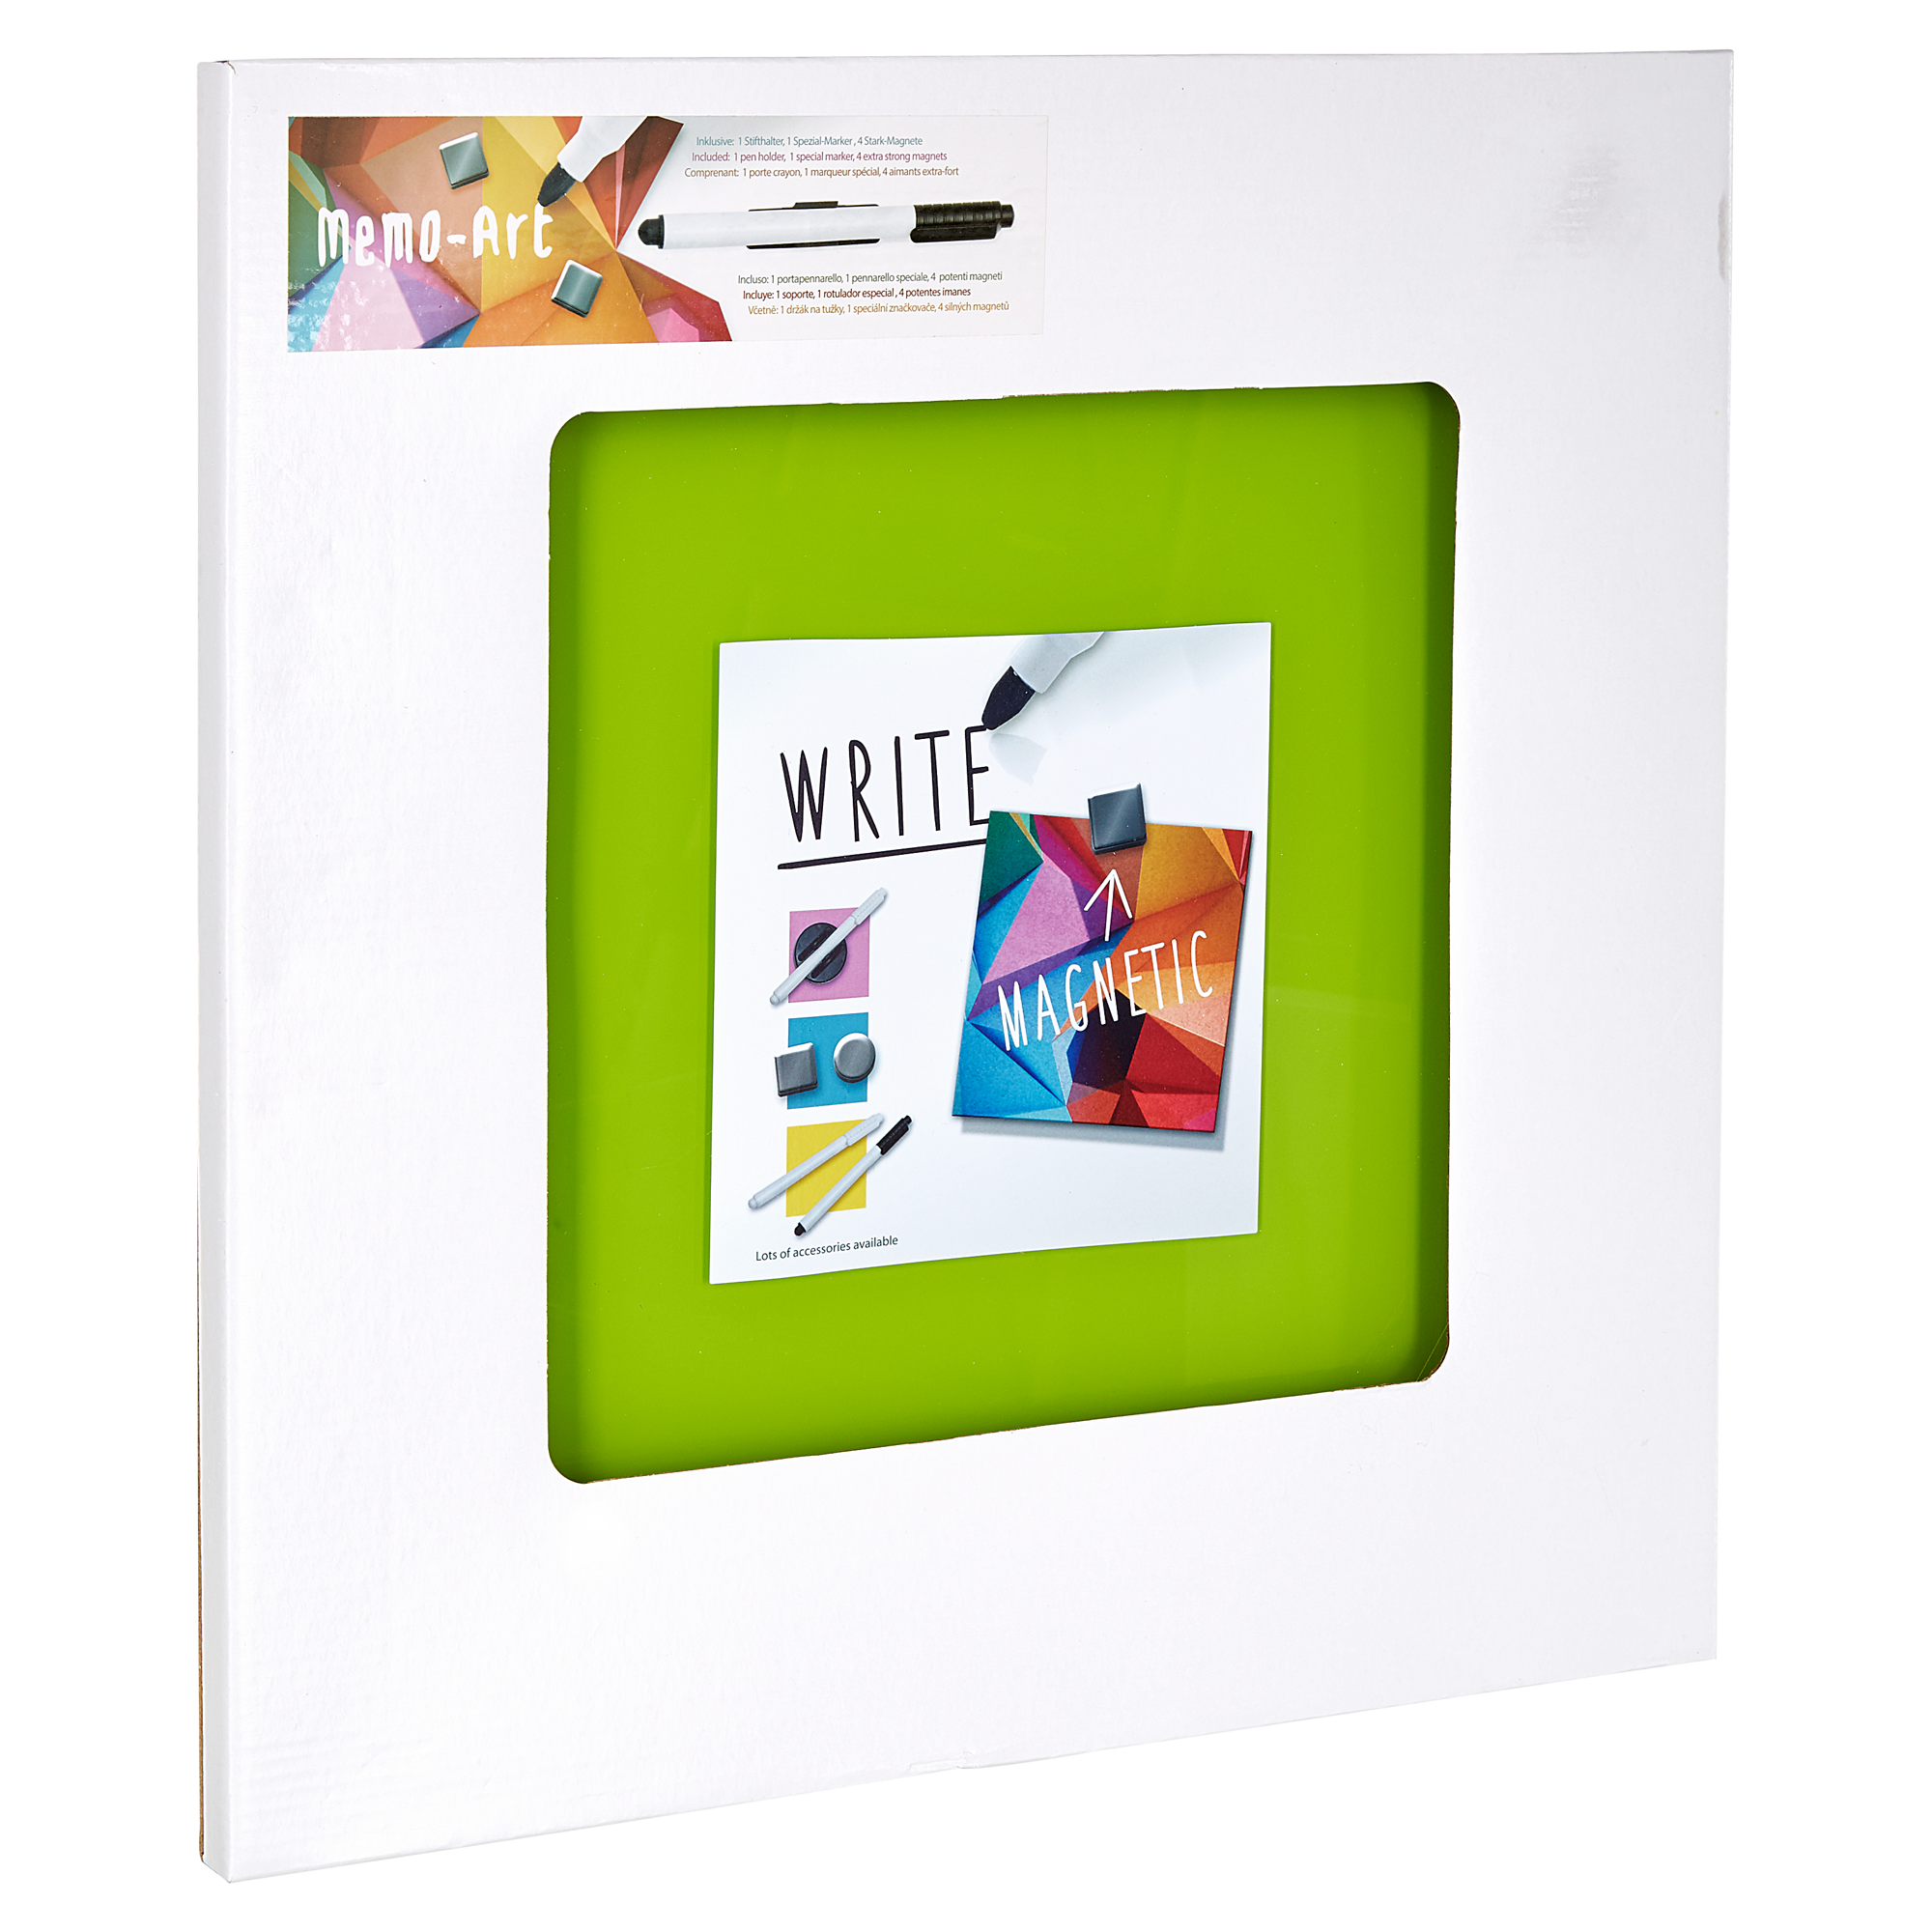 Memoboard beschreibbar grün 30 x 30 cm + product picture